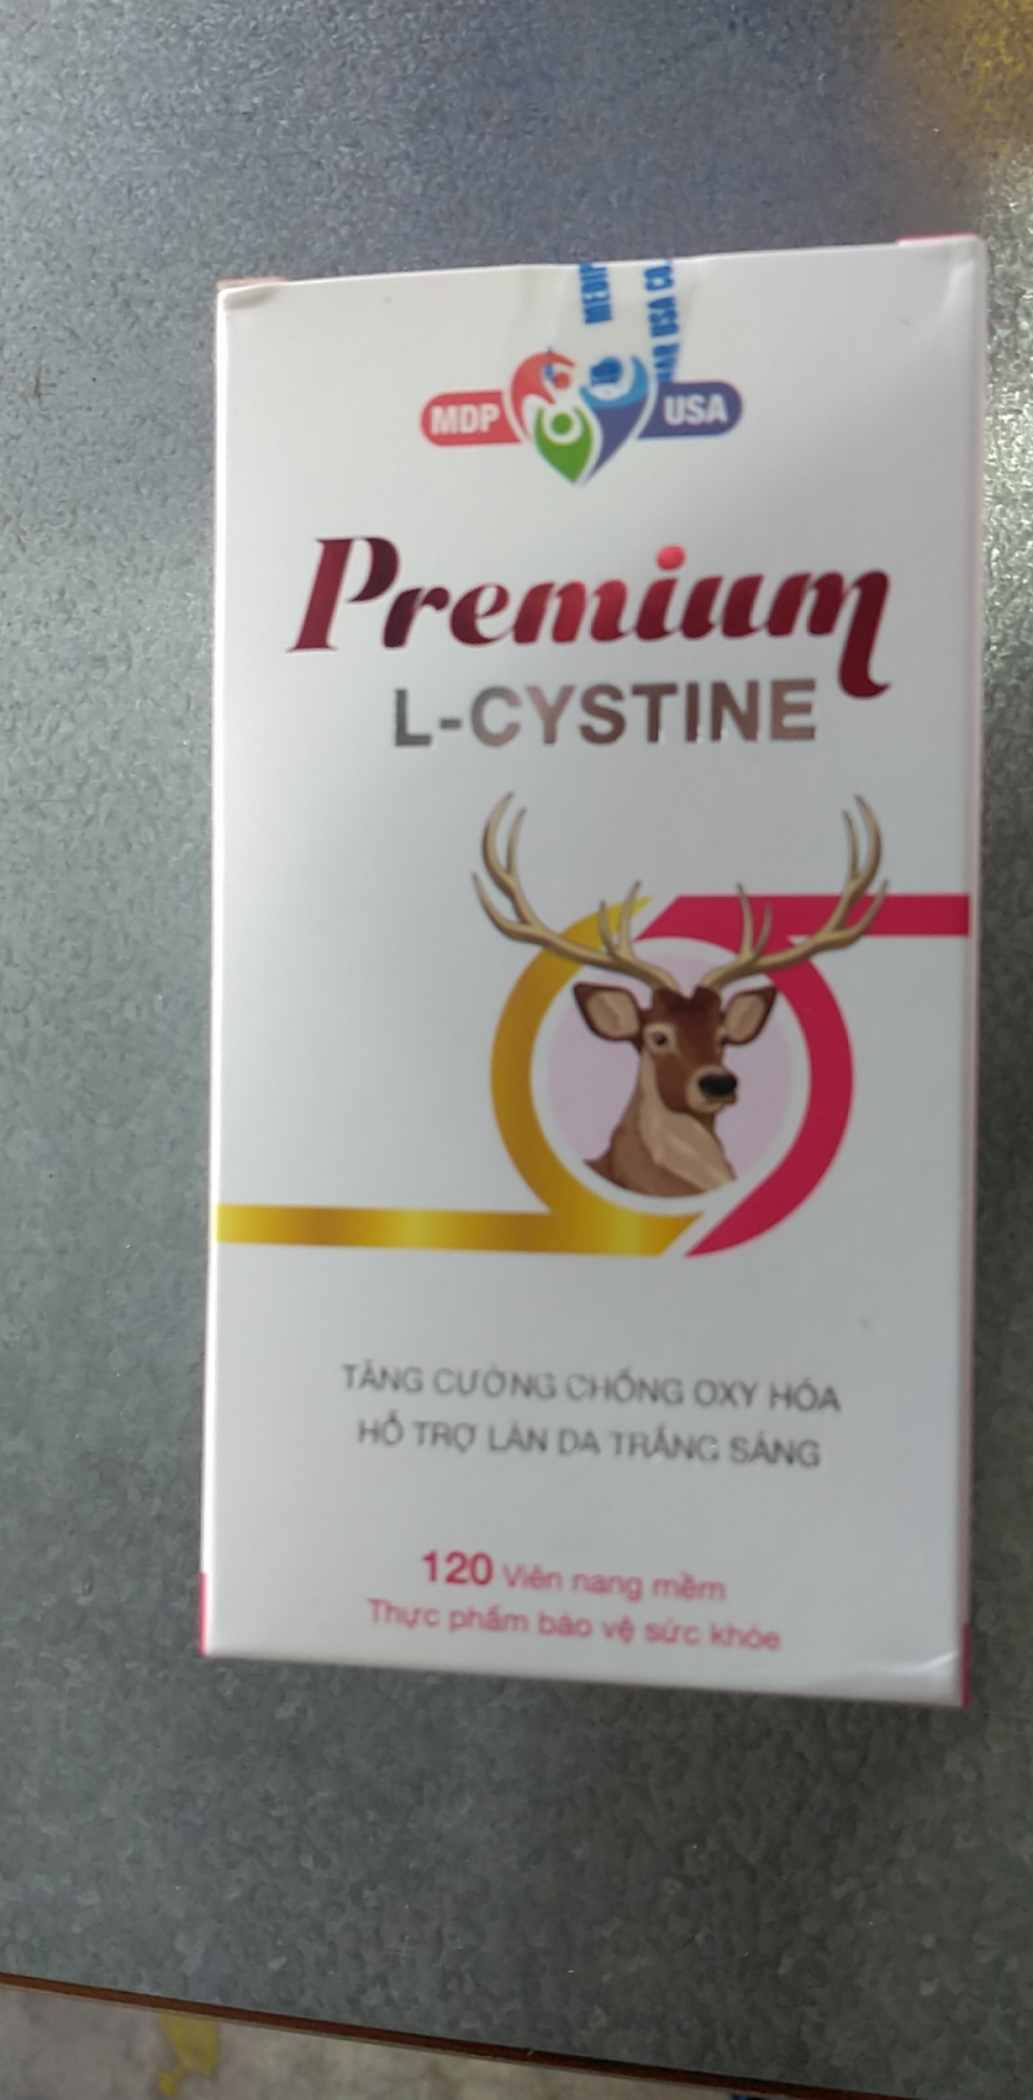 Thực phẩm chức năng Premium L-CYSTINE - Chống oxy hóa, trắng da, mờ thâm nám - Lọ 120 viên nang mềm